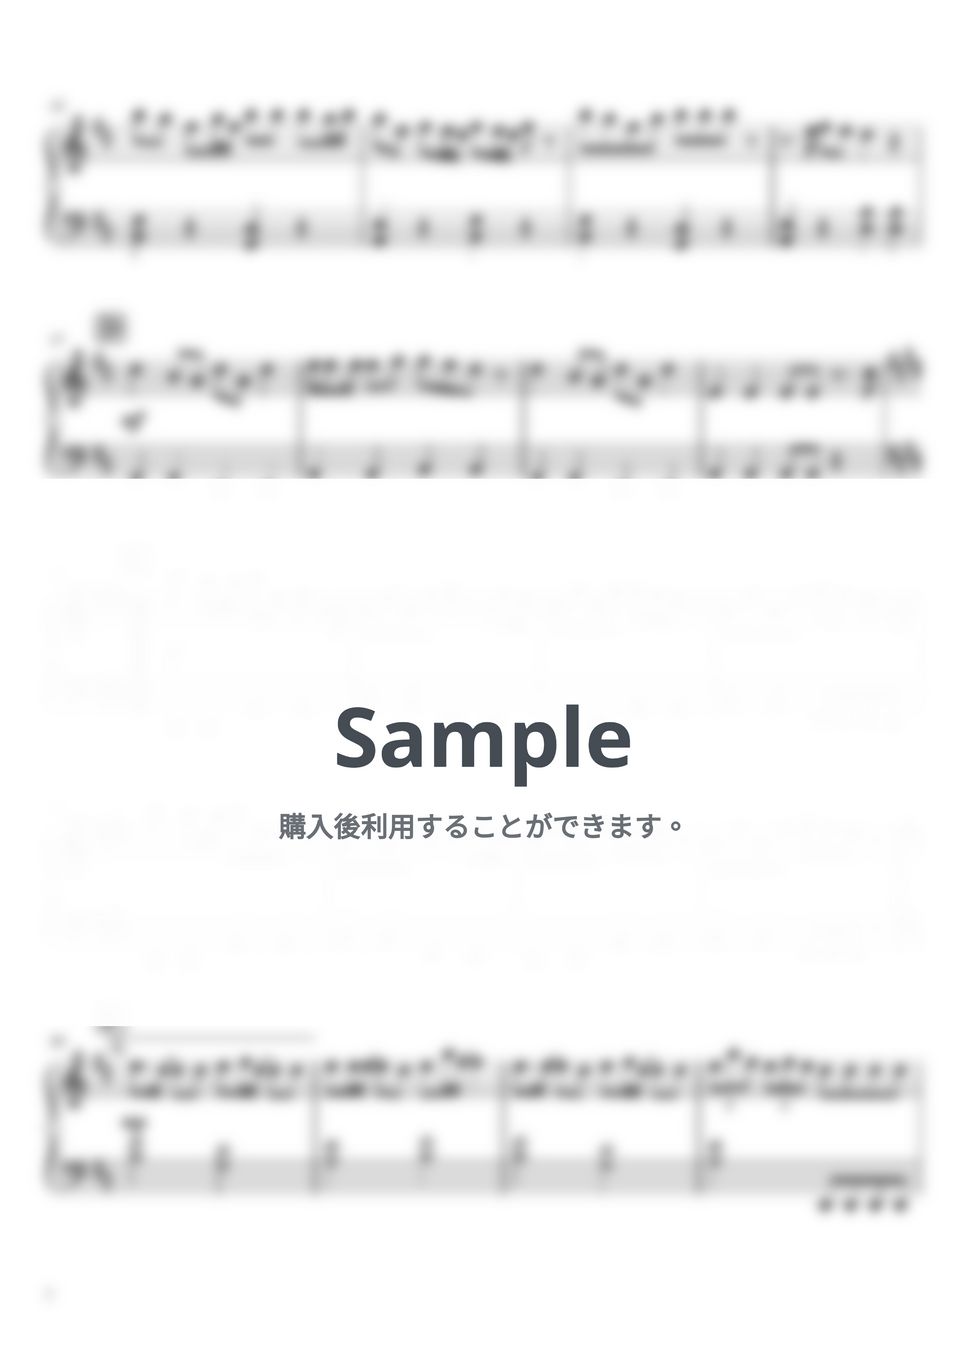 asmi, 和ぬか - ヨワネハキ (ピアノ,楽譜,ピアノ弾き語り,ソロ) by ピアノ猫